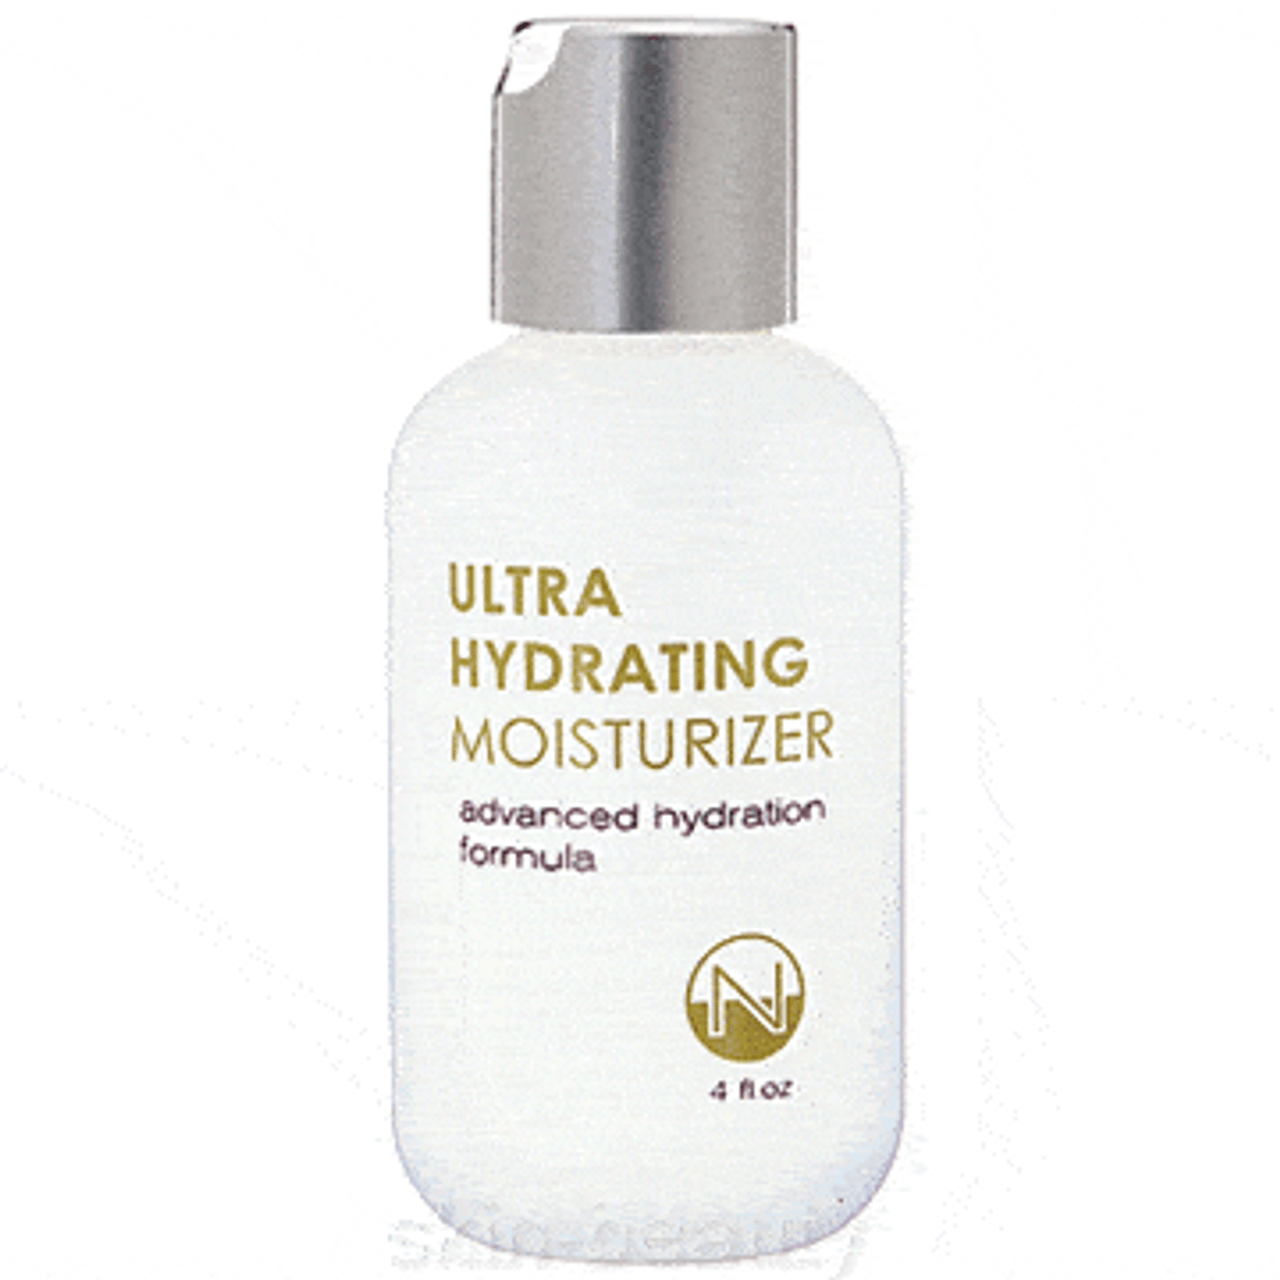 Skin-Beauty Ultra Hydrating Moisturizer - 4 oz